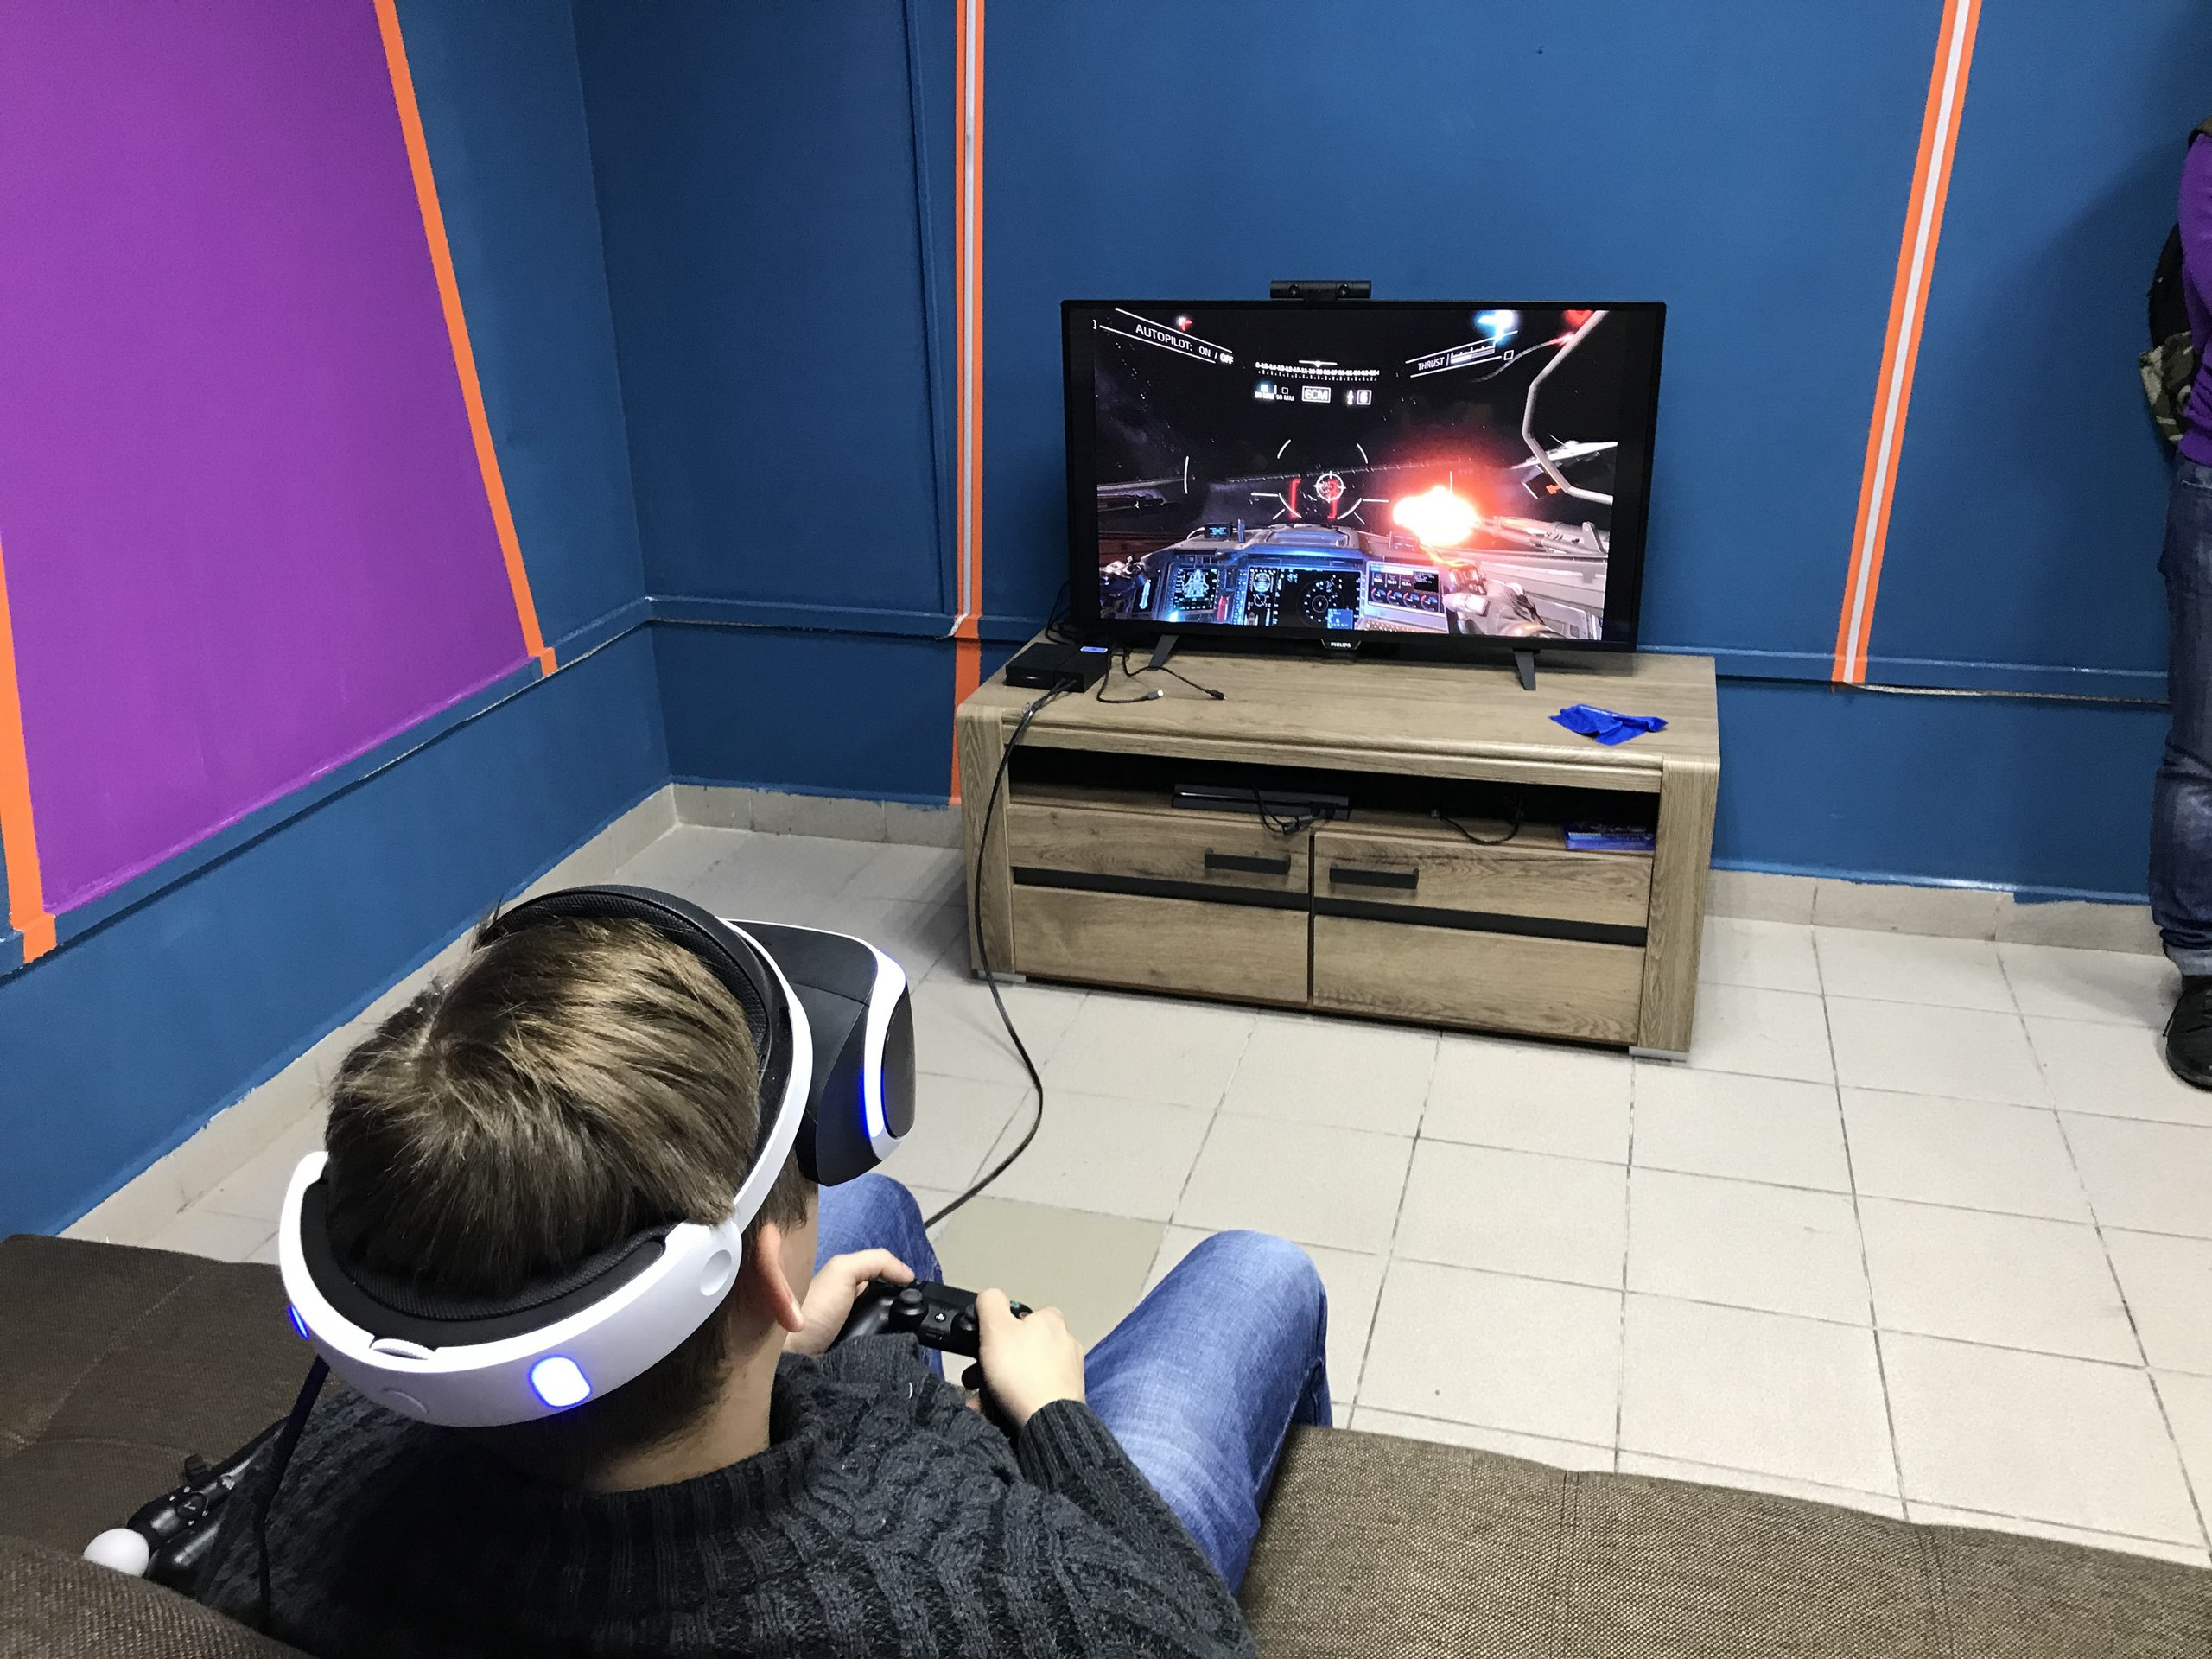 Клуб игровой реальности. Сони плейстейшен ВР. Шлем плейстейшен VR. Игровой зал плейстейшен 4. VR очки Sony PLAYSTATION 4 игры.